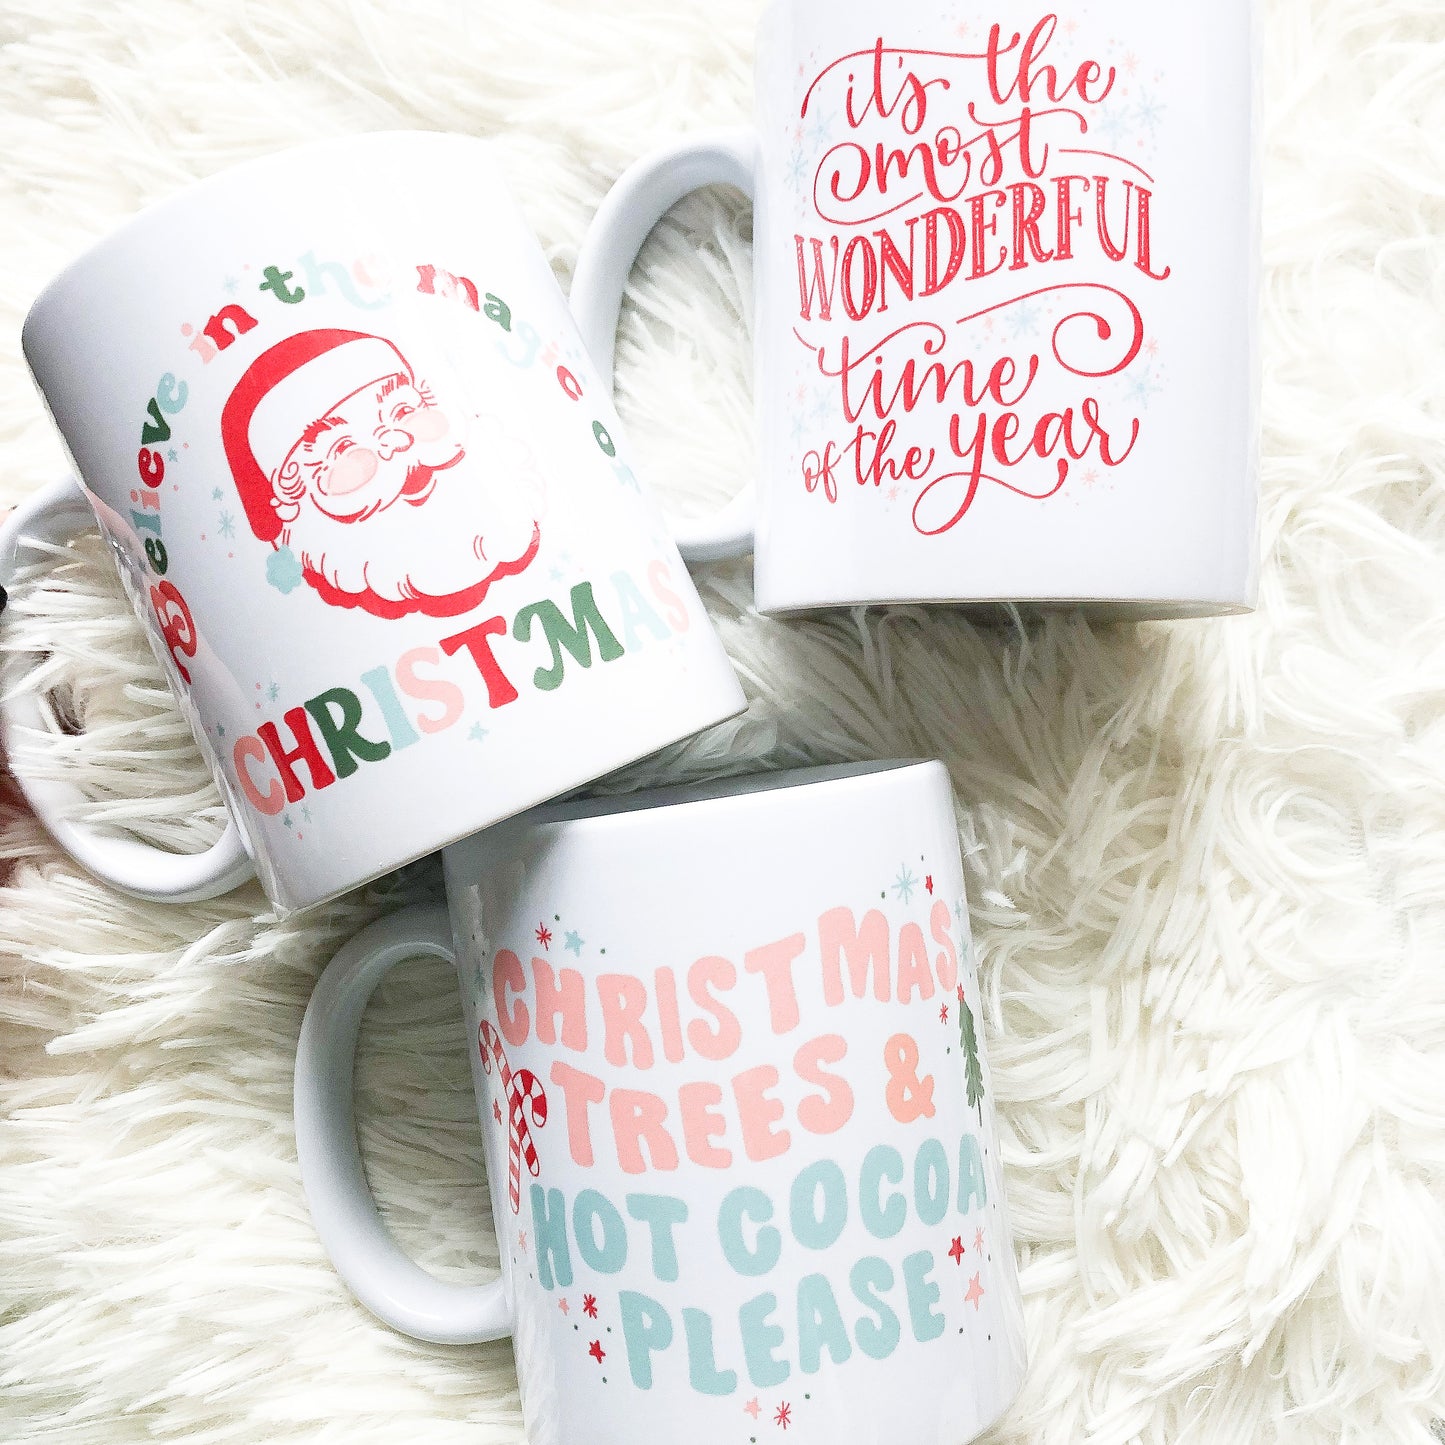 Christmas Trees & Hot Cocoa Please Mug